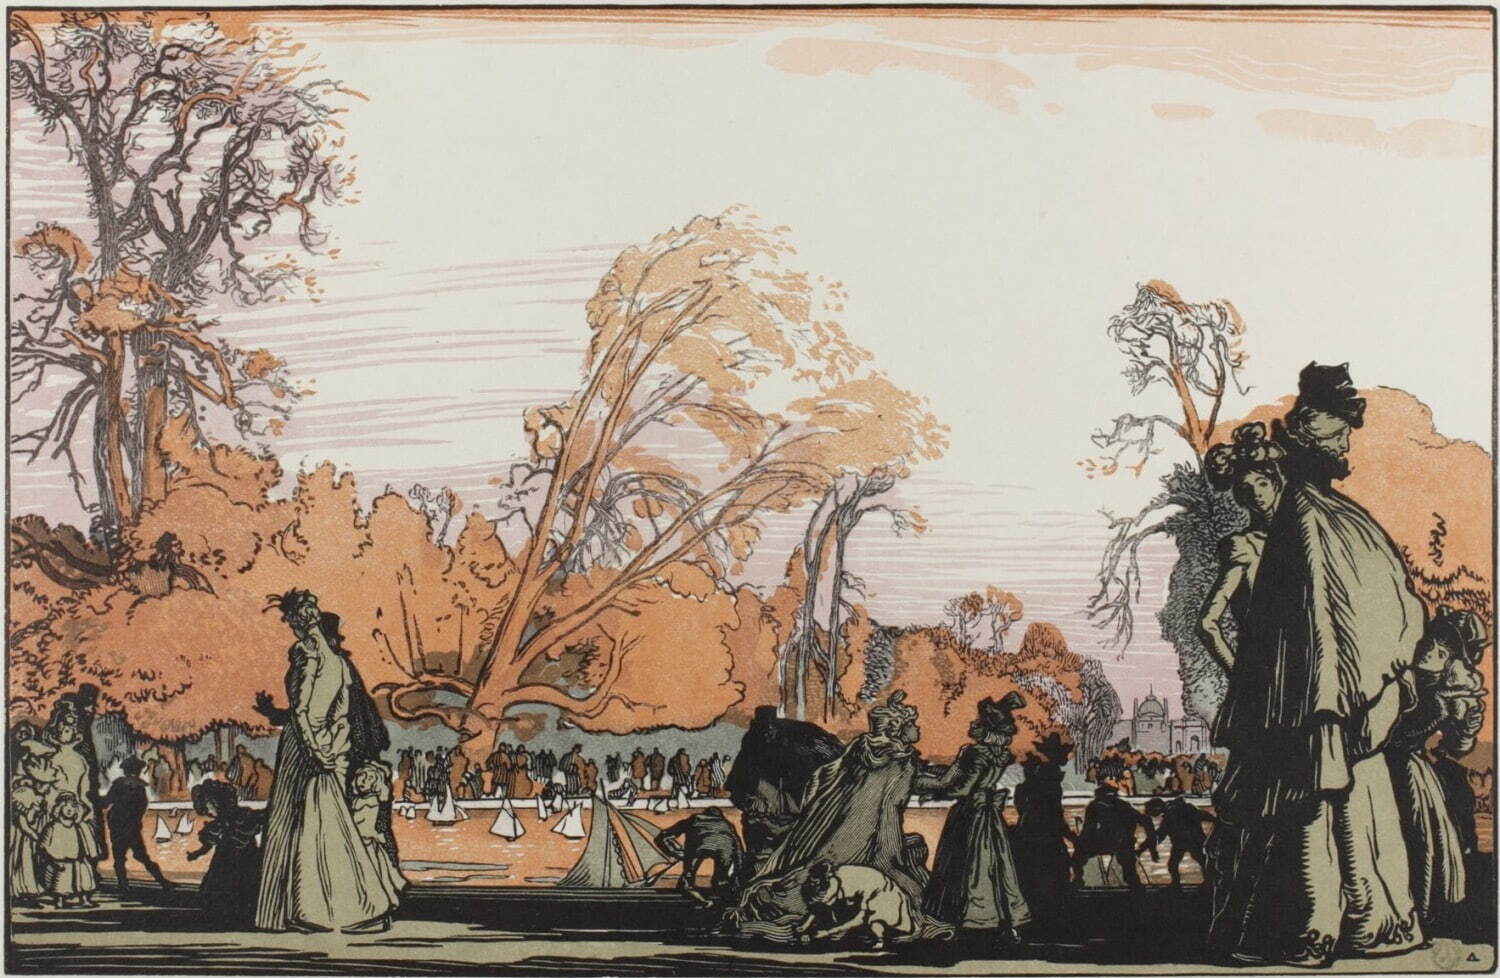 オーギュスト・ルペール 《チュイルリー公園の池》
1898年　木版(多色)　町田市立国際版画美術館